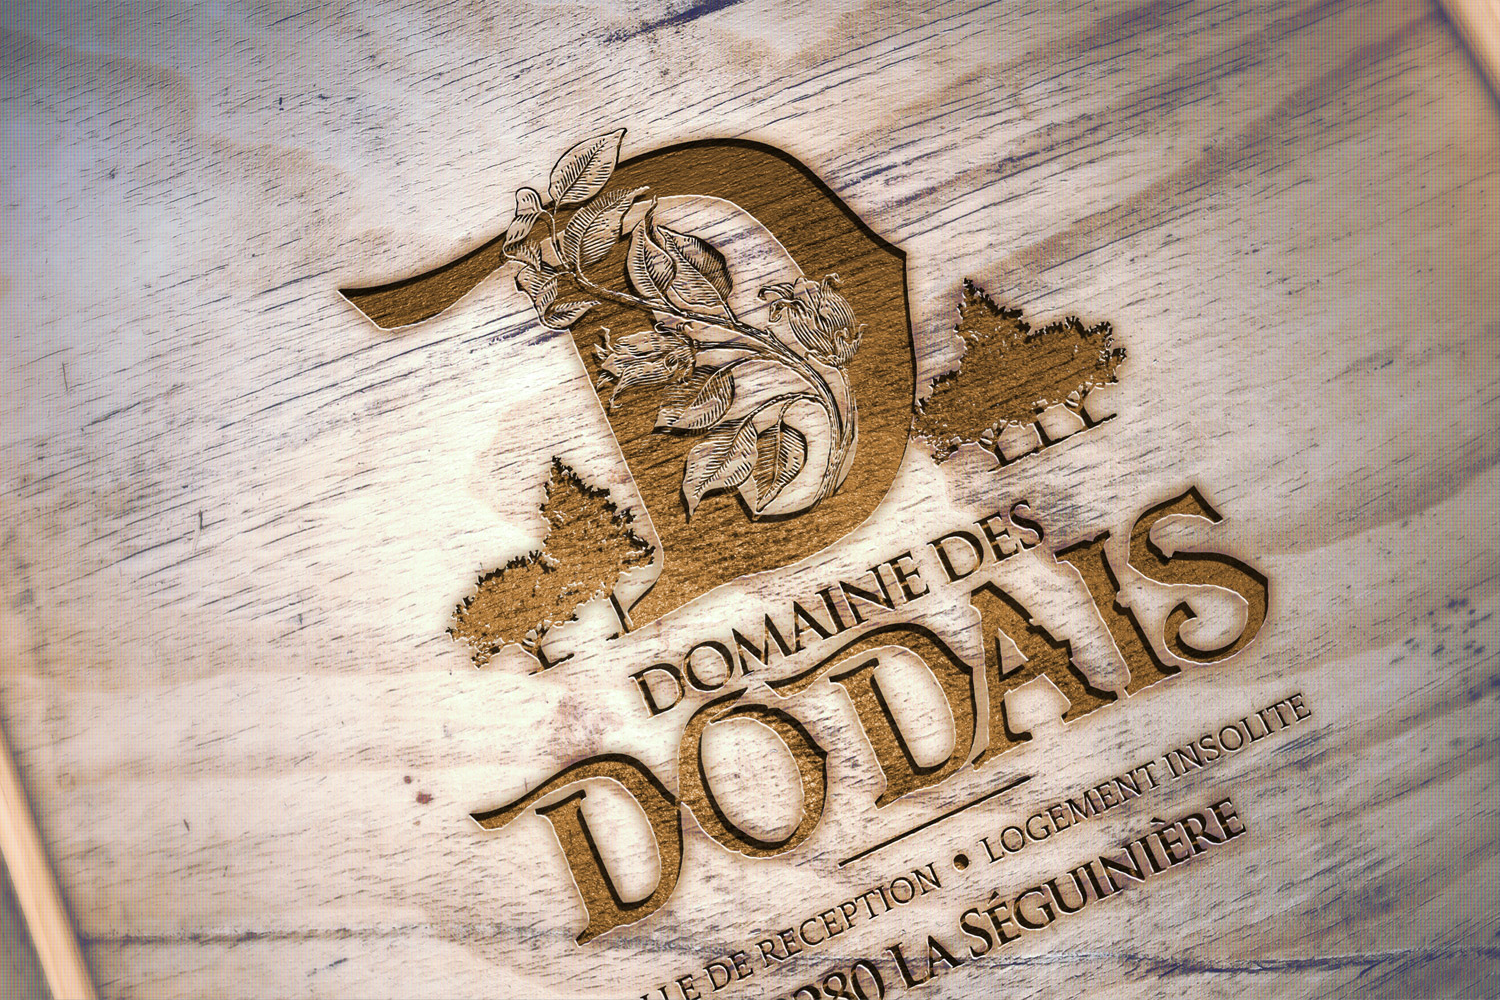 Domaine des Dodais